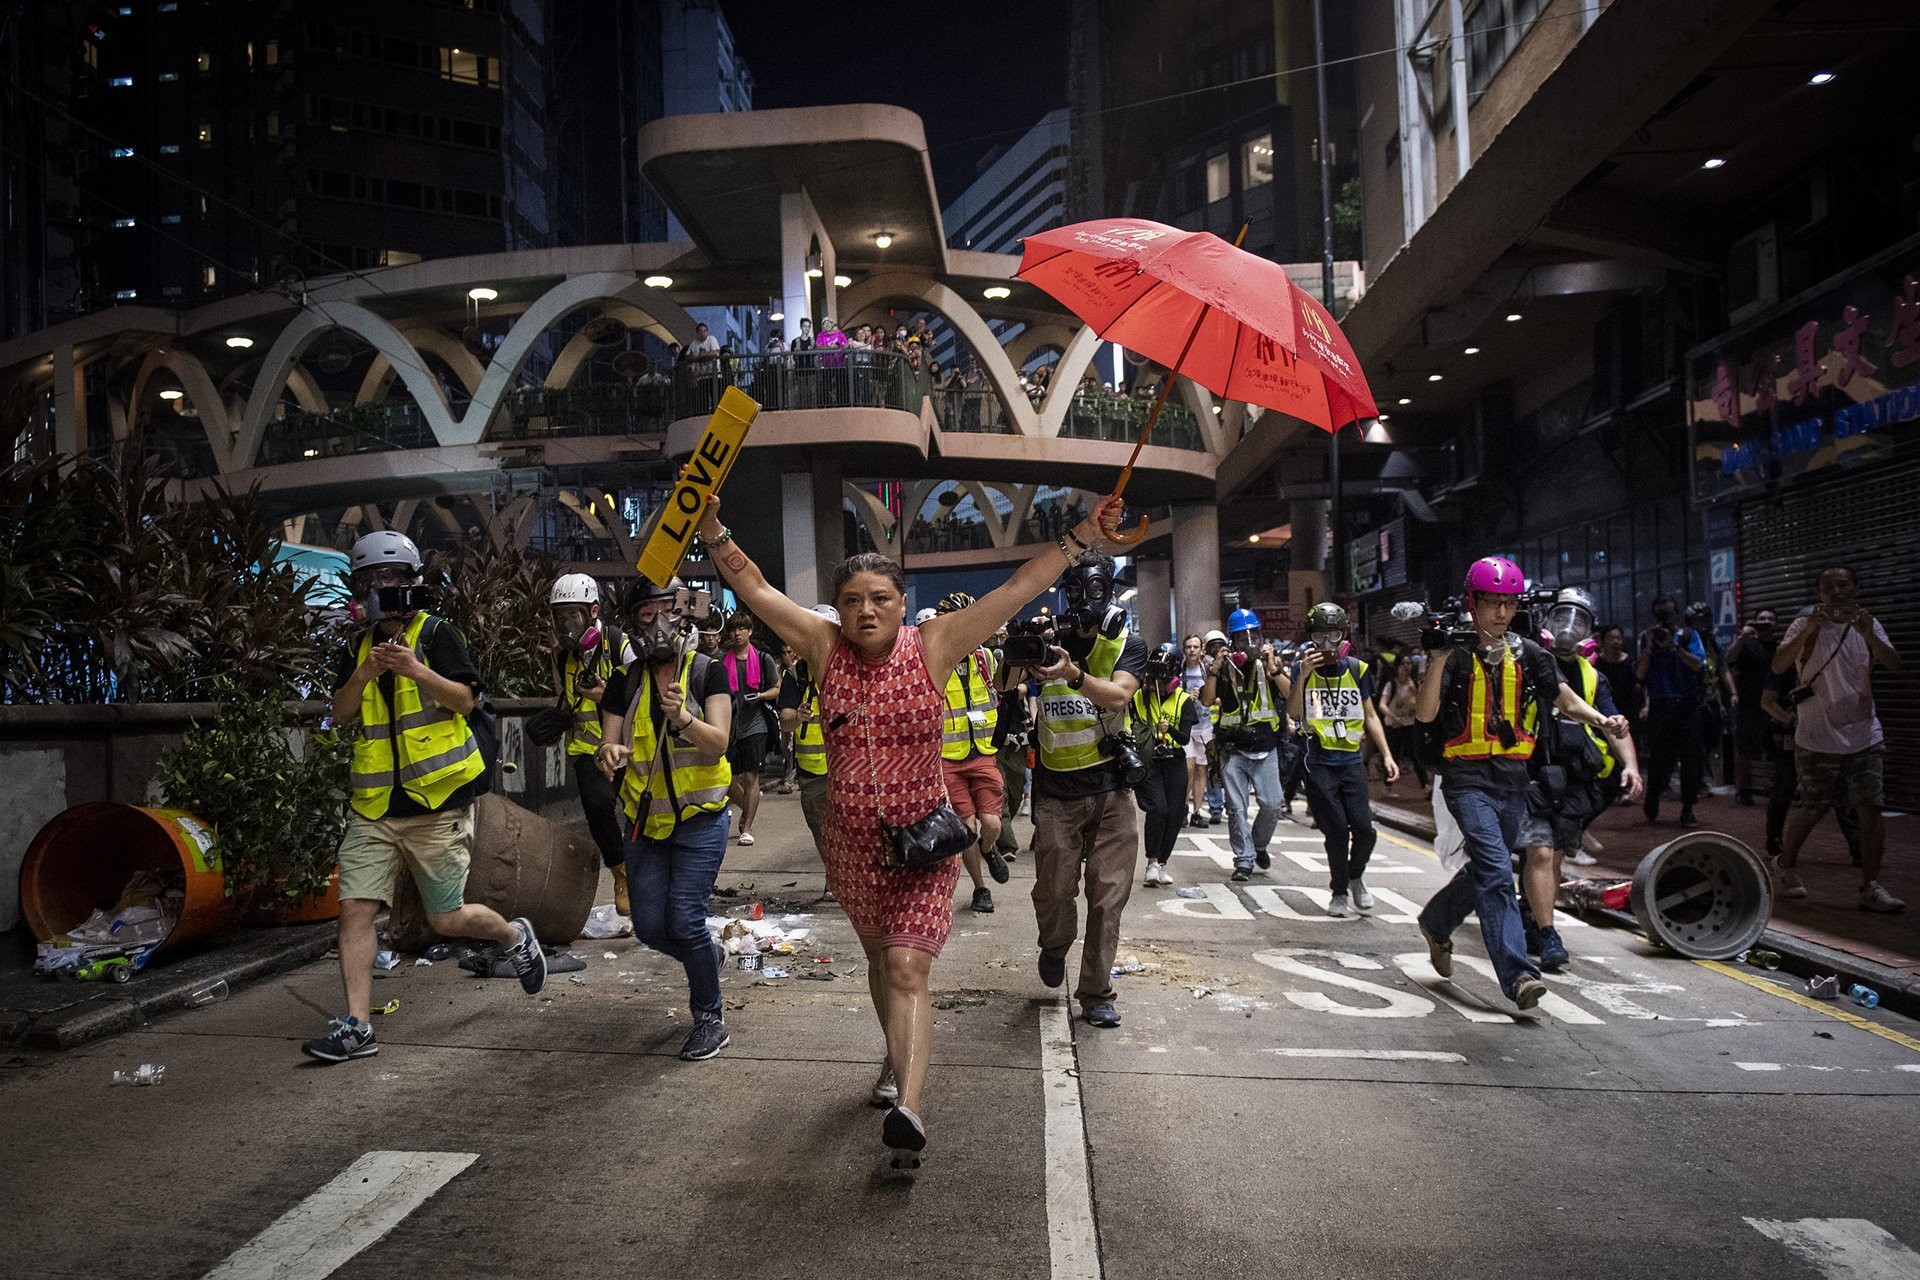 Женщина с зонтиком (символ протеста) во время демонстраций в Гонконге против законопроекта об экстрадиции, 1 октября 2019. Автор Николас Асфури